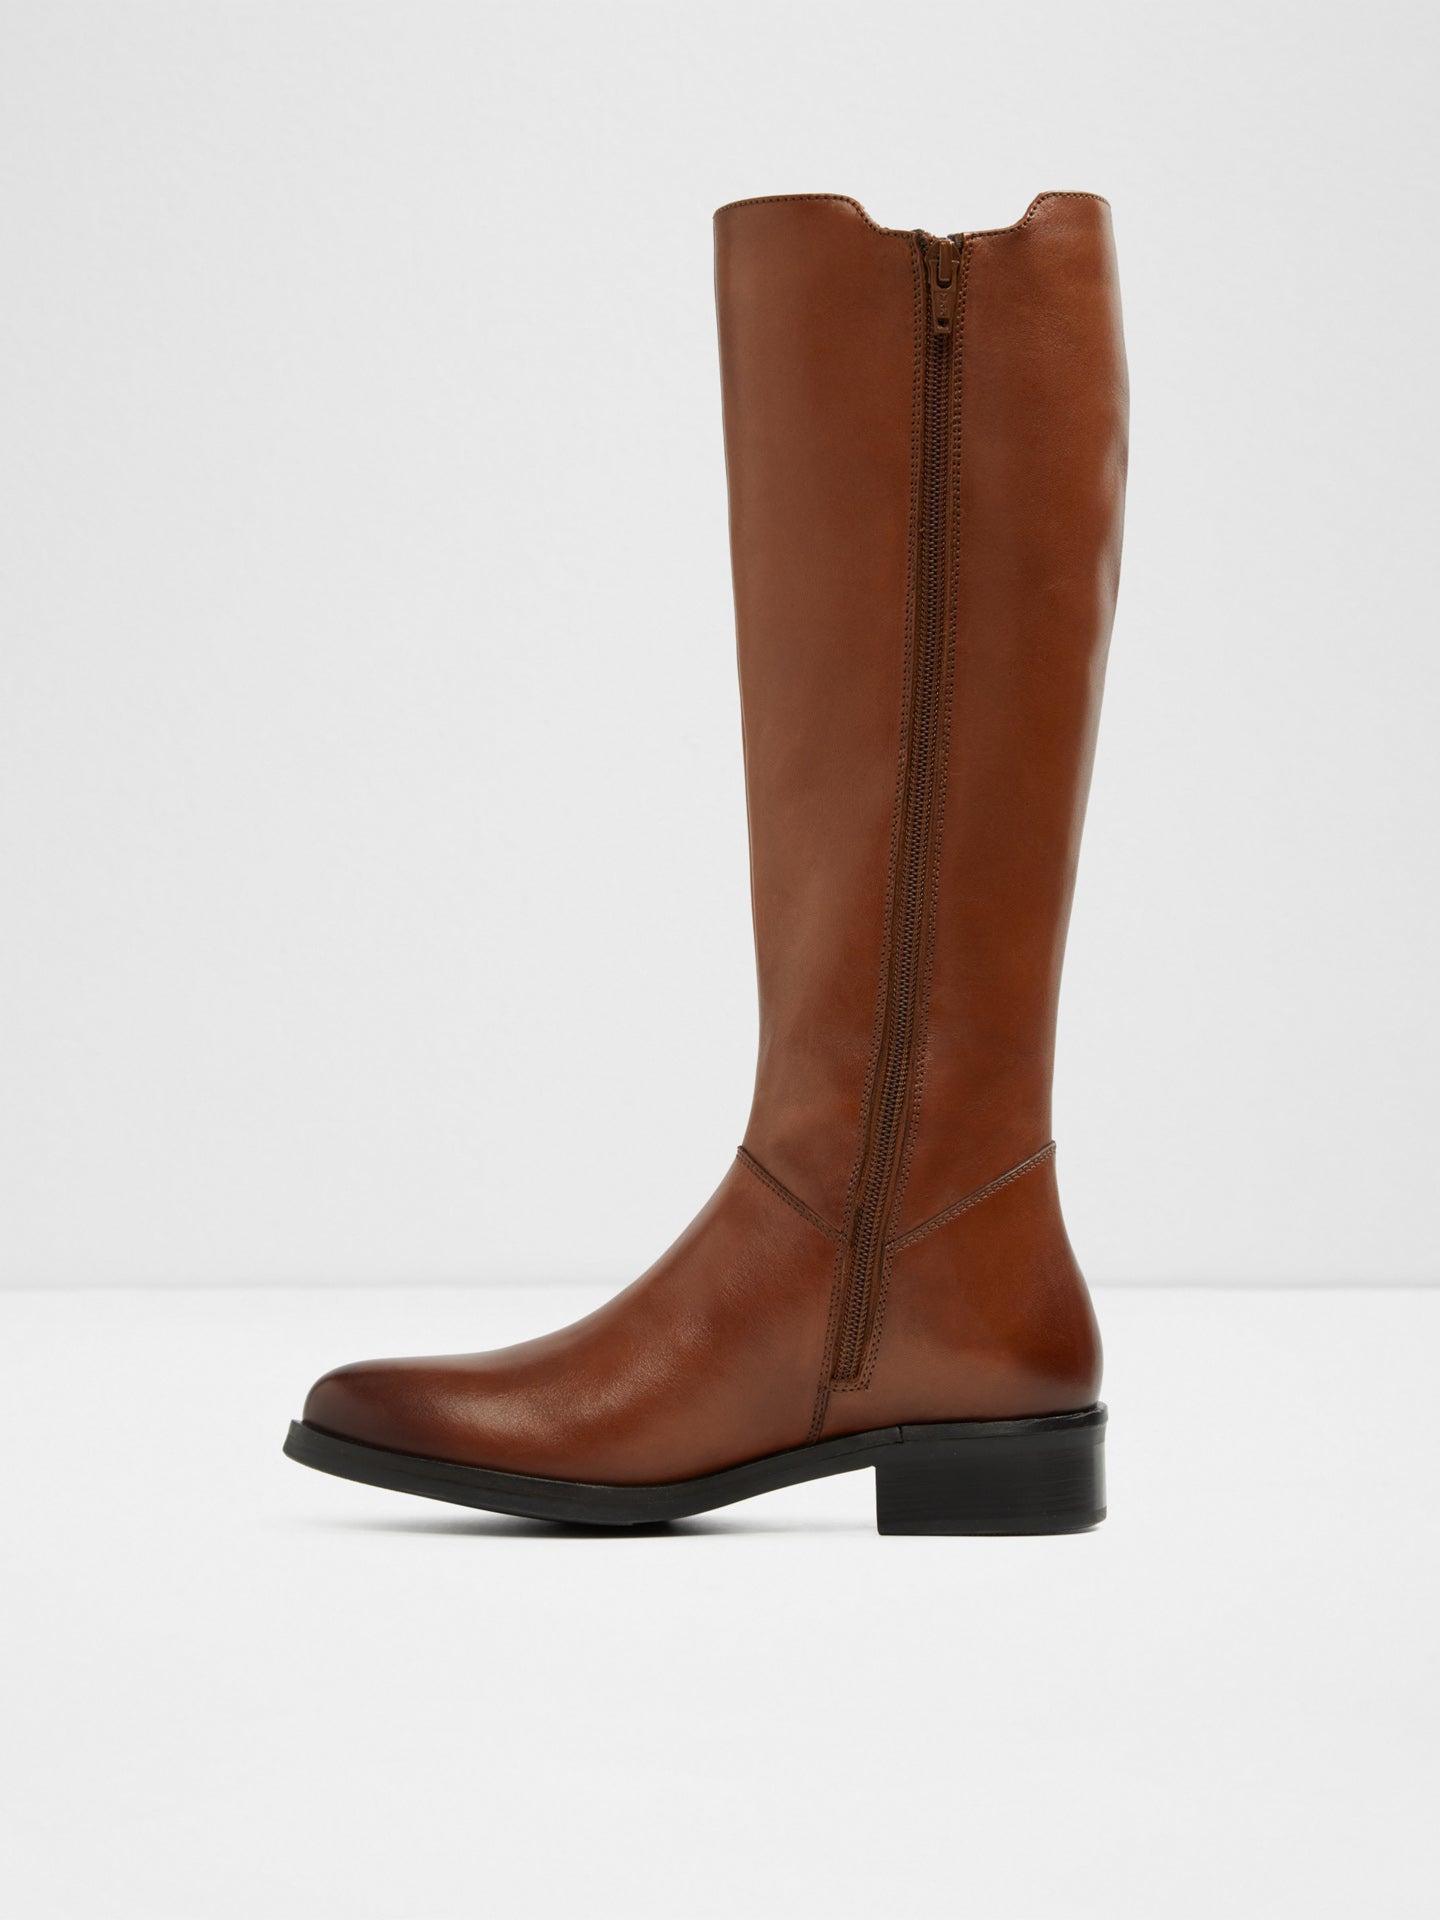 maroon knee boots